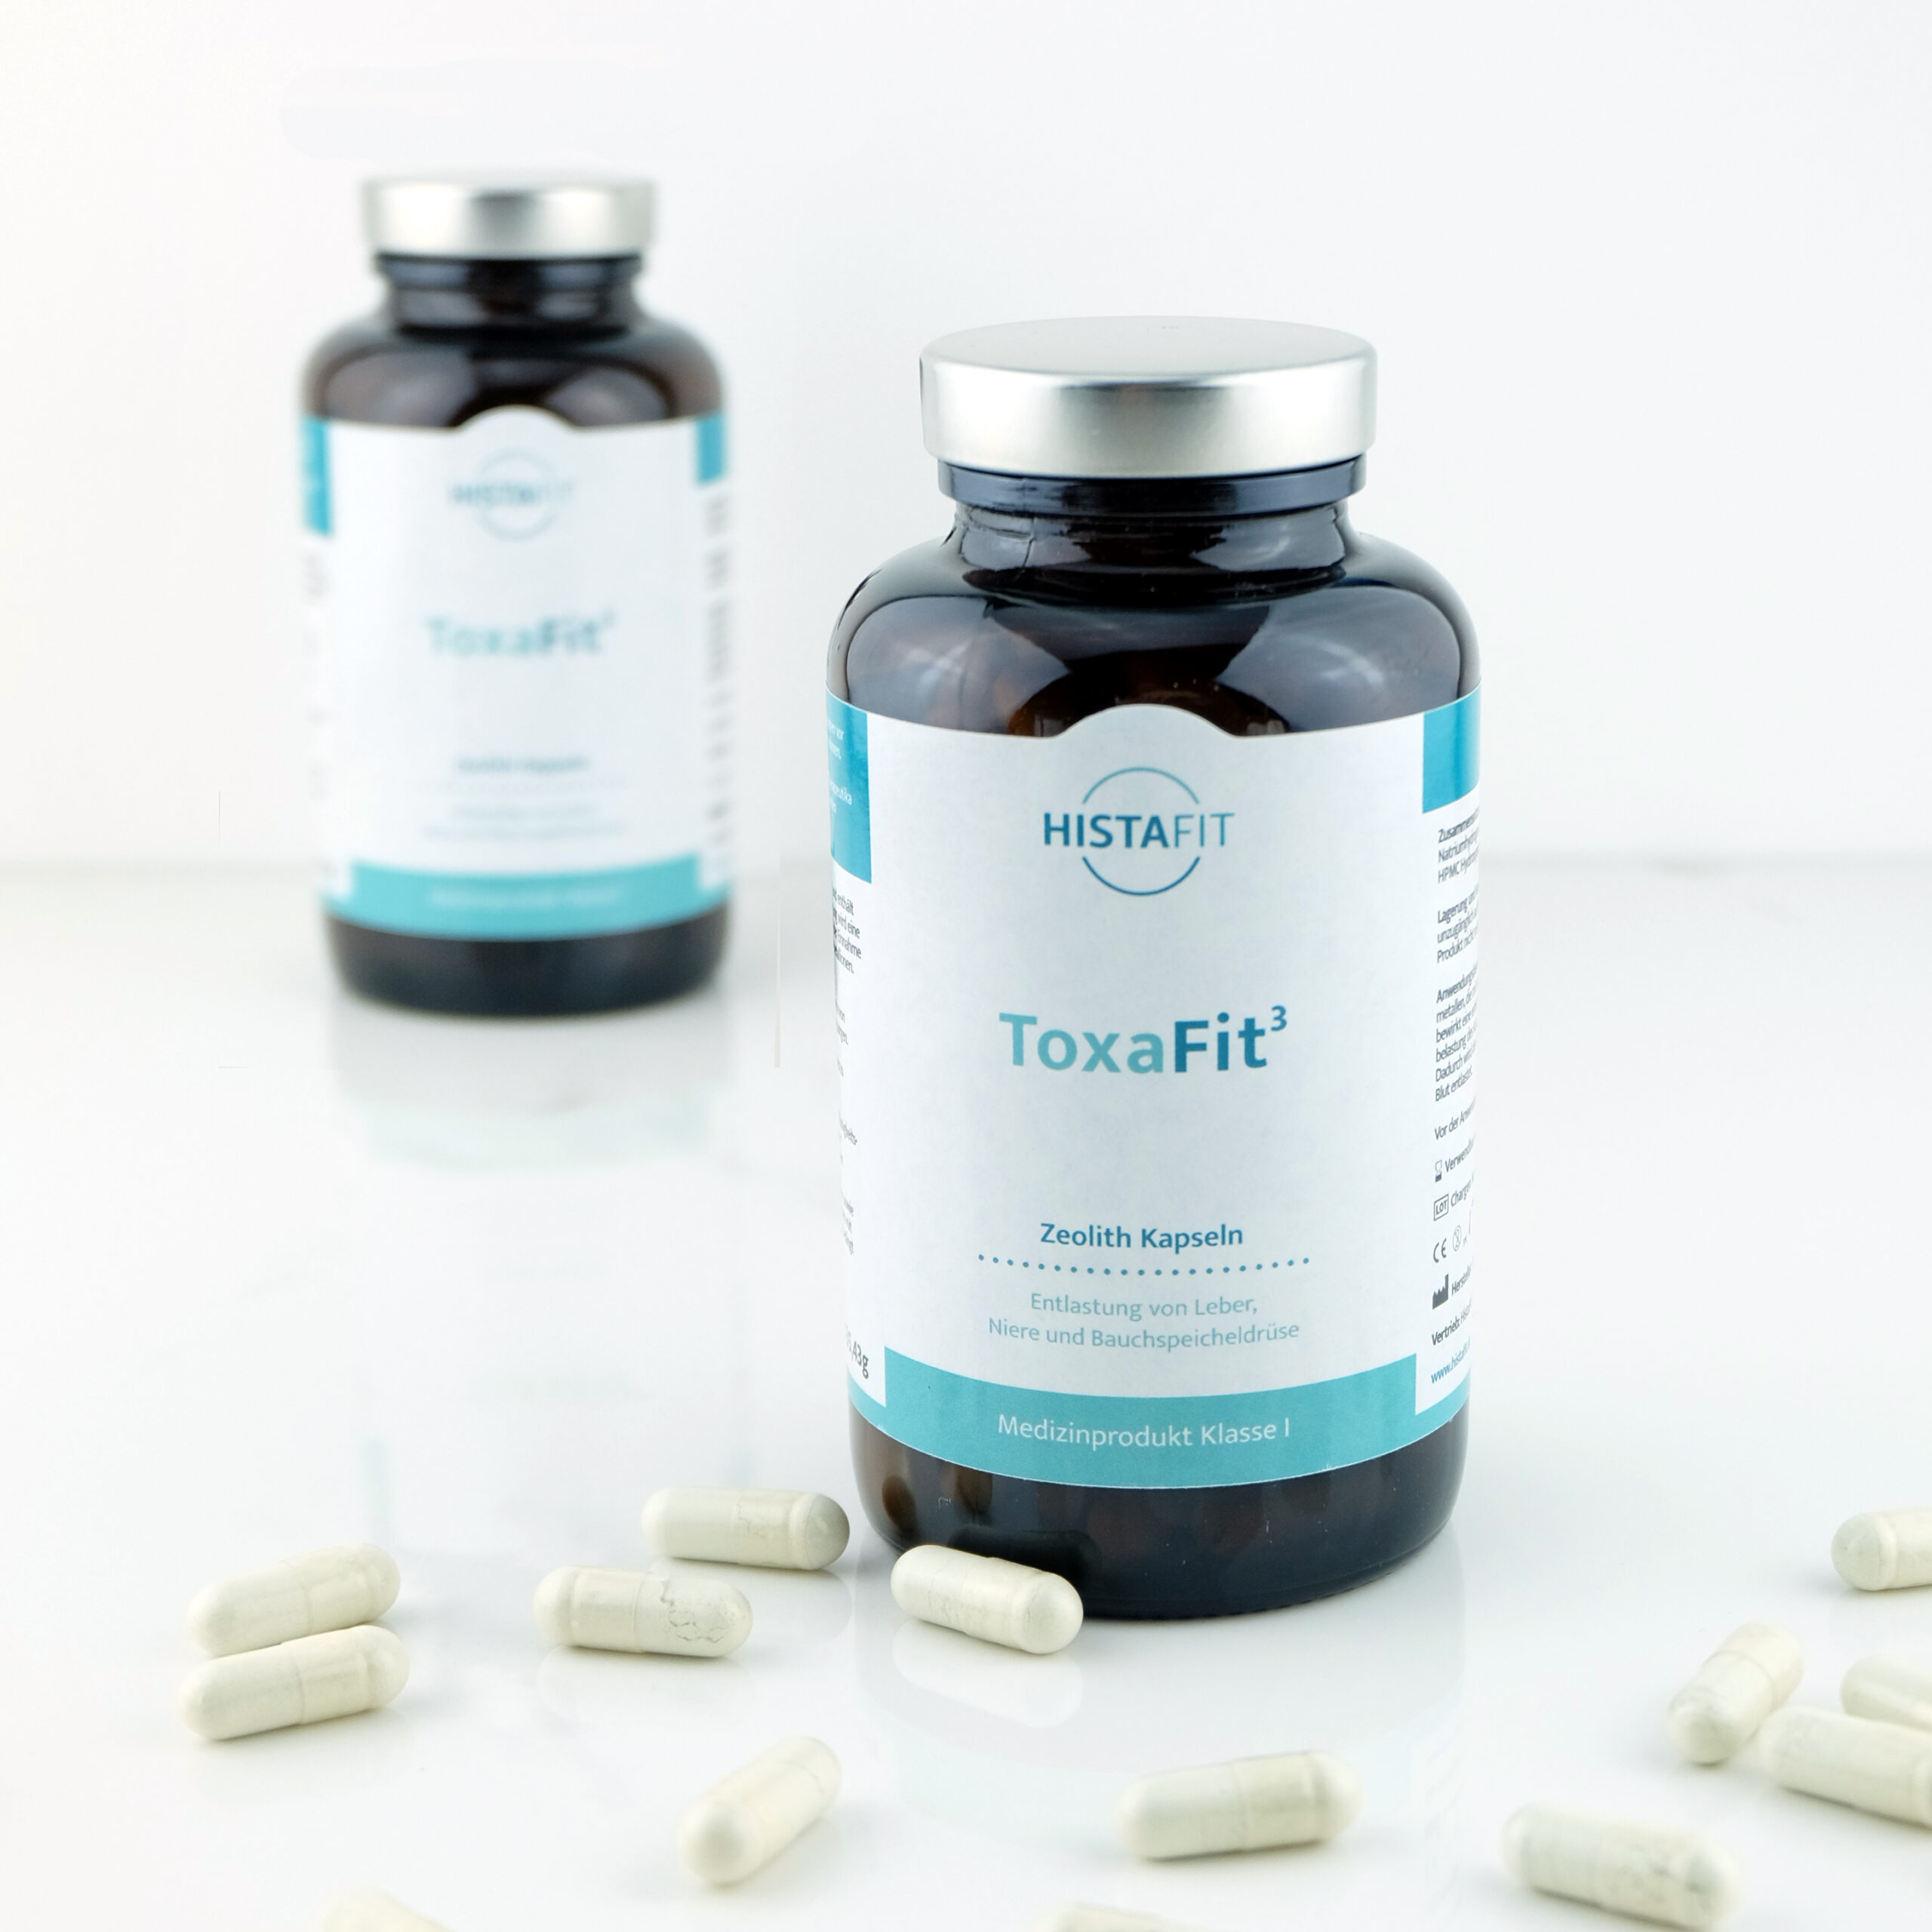 HistaFit ToxaFit3 - Medizinprodukt